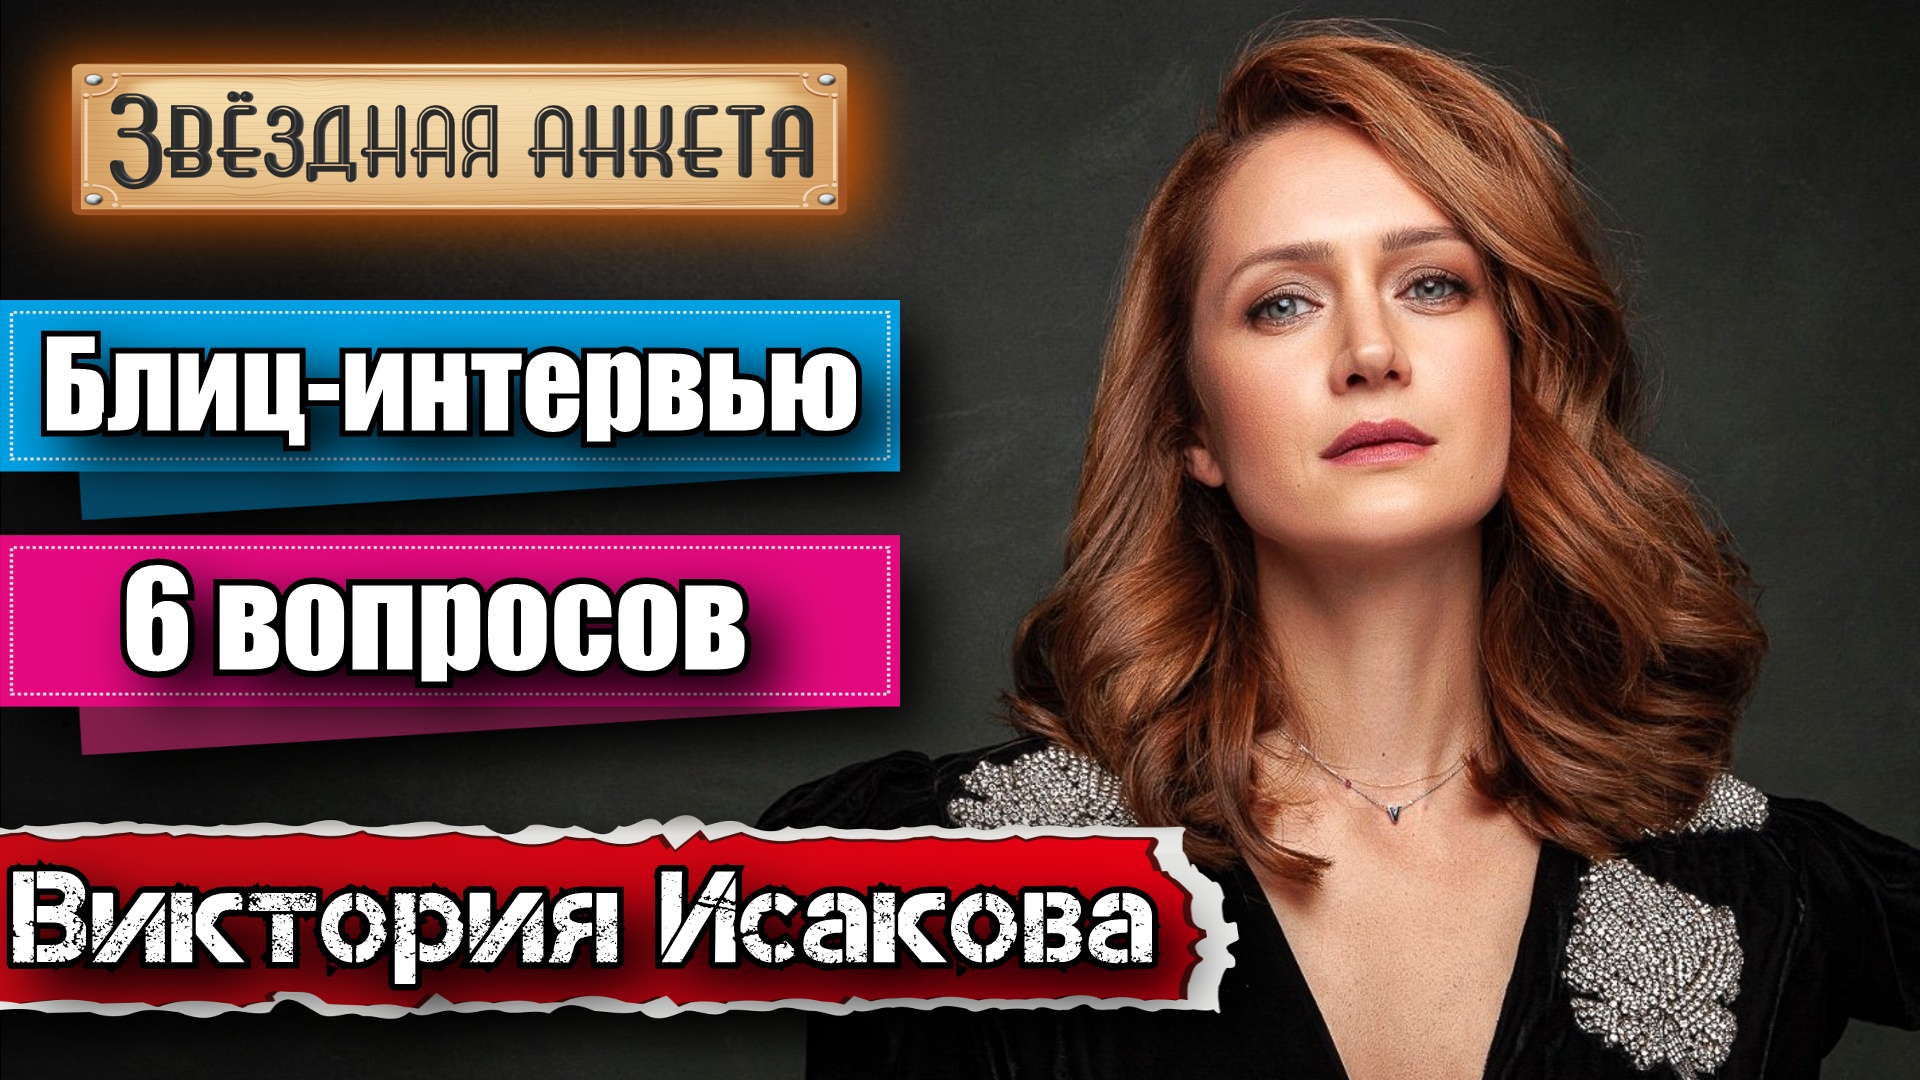 Звёздная анкета: Виктория Исакова | Короткое интервью в блиц-формате